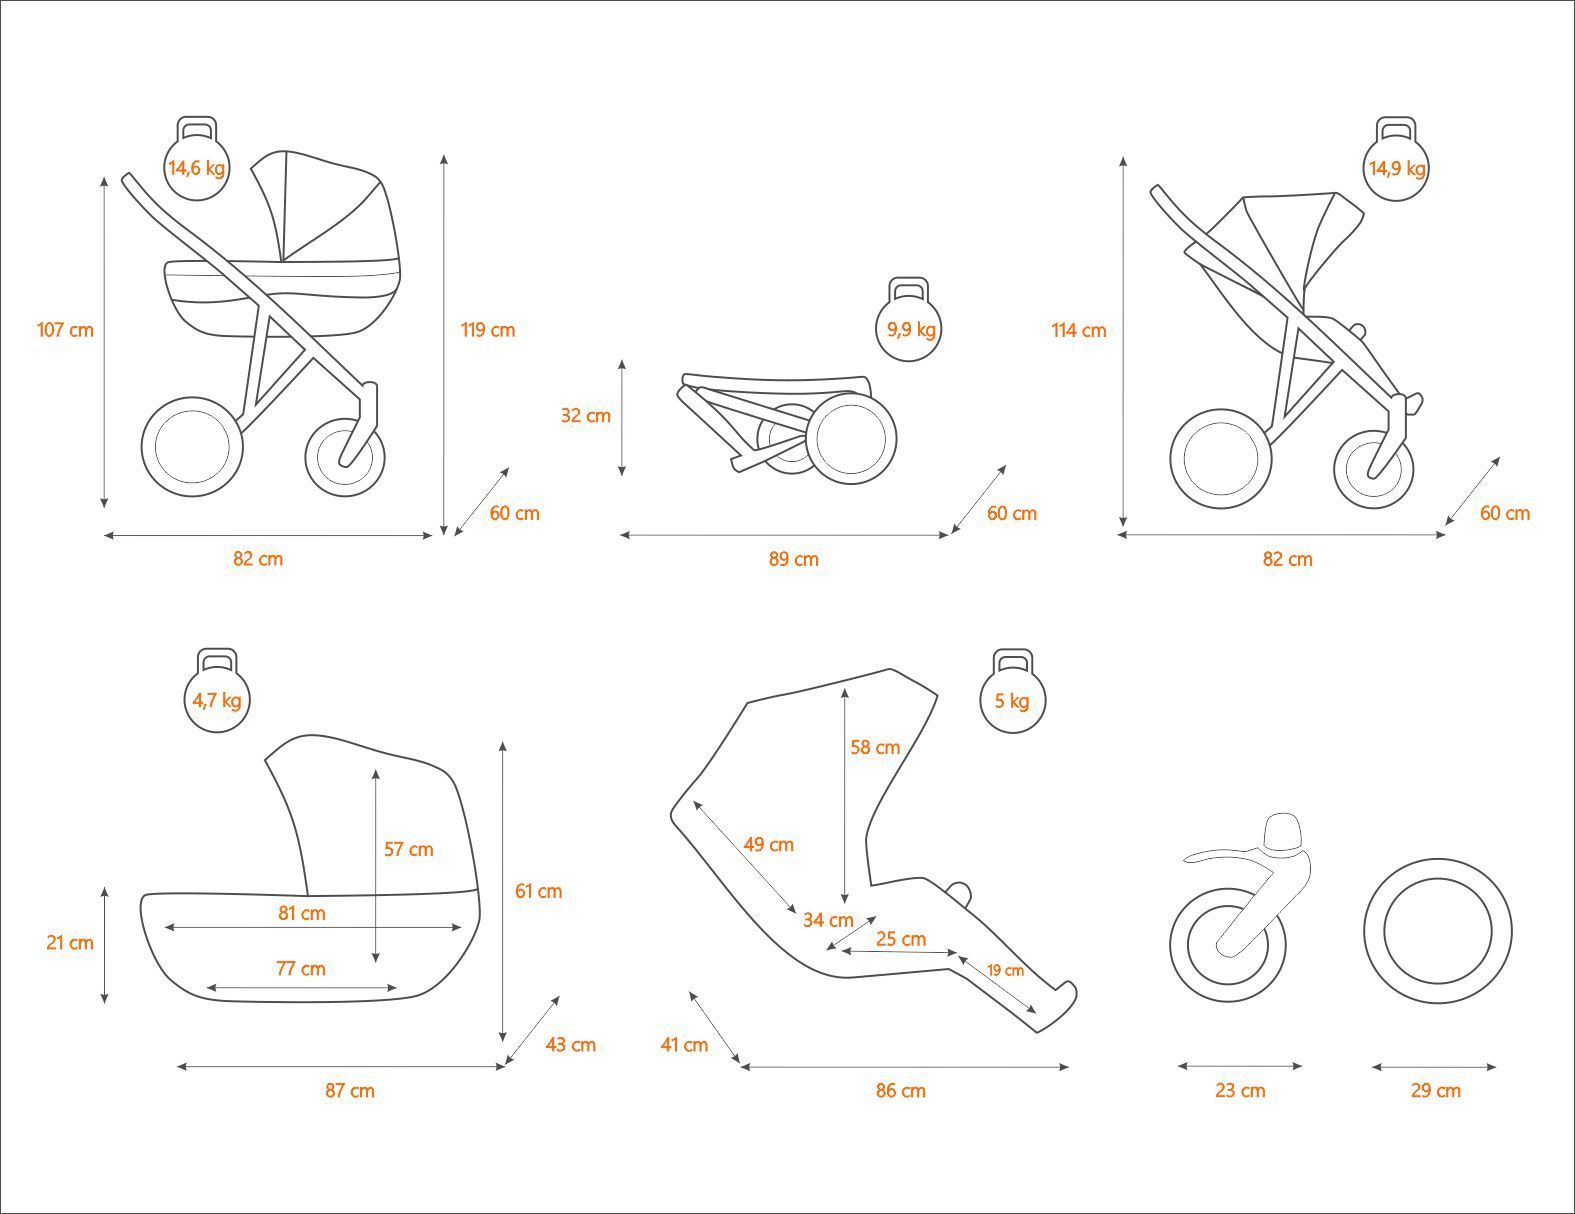 Dječja kolica Kunert Rotax specifikacije